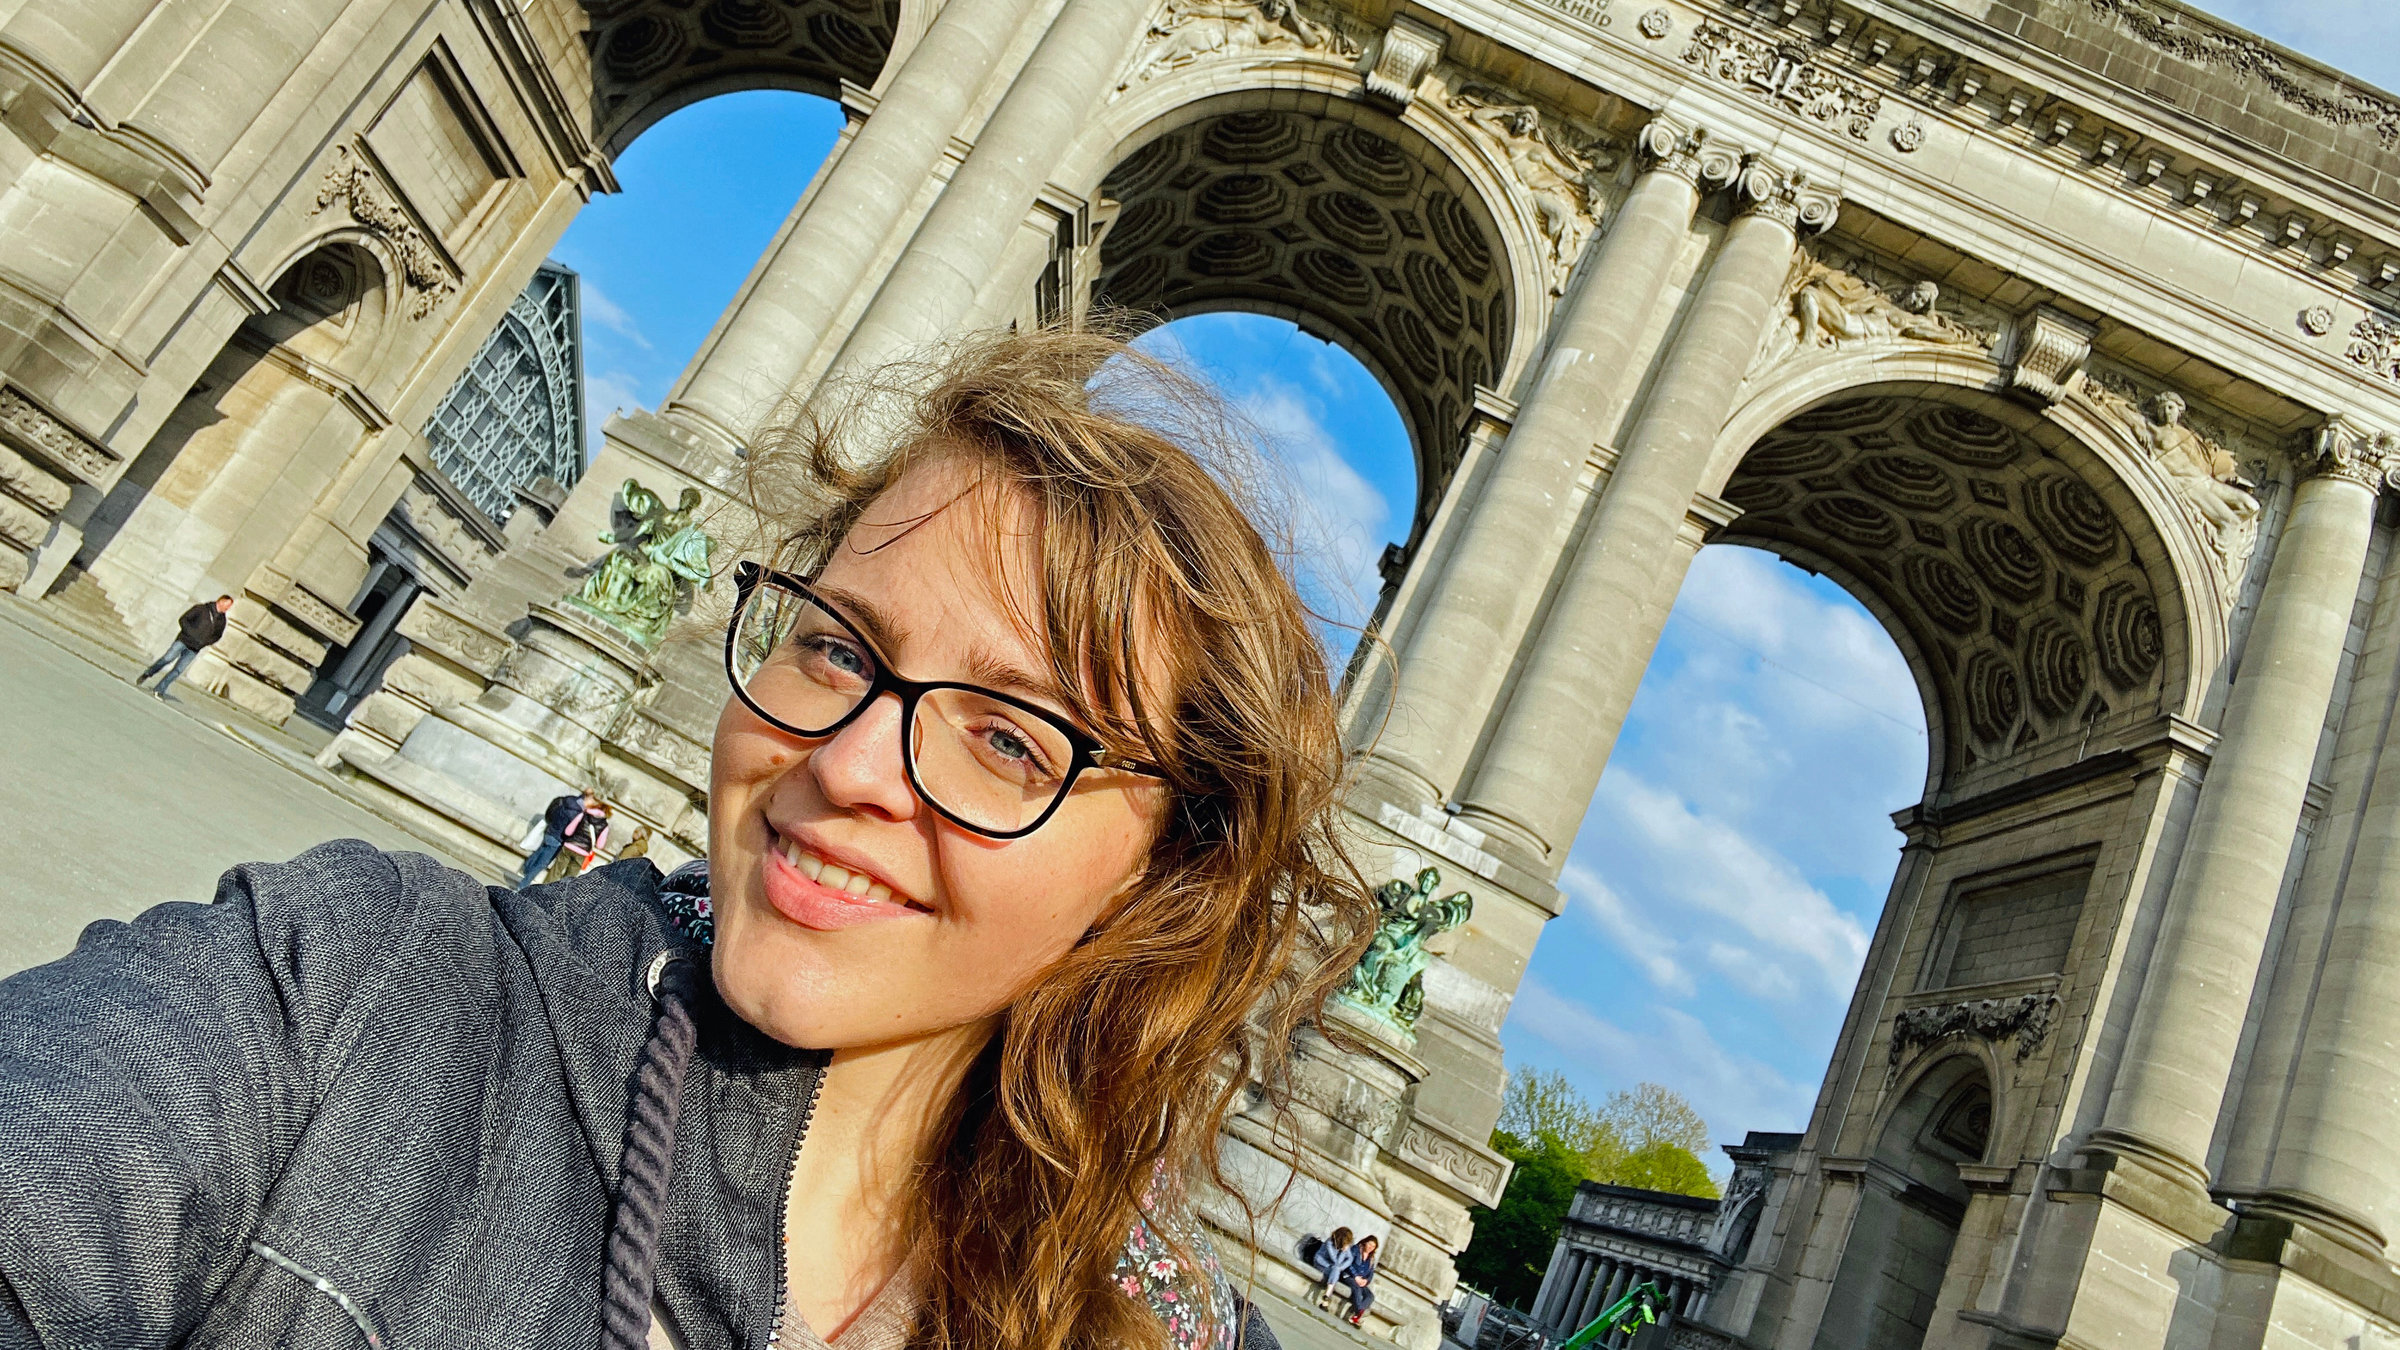 "Terra Xpress: Mikroabenteuer oder das Glück allein? Urlaub mal anders": Julia Decker mit blonden, Haaren und Brille steht lächelnd vor einem großen historischen Gebäude mit Torbögen.